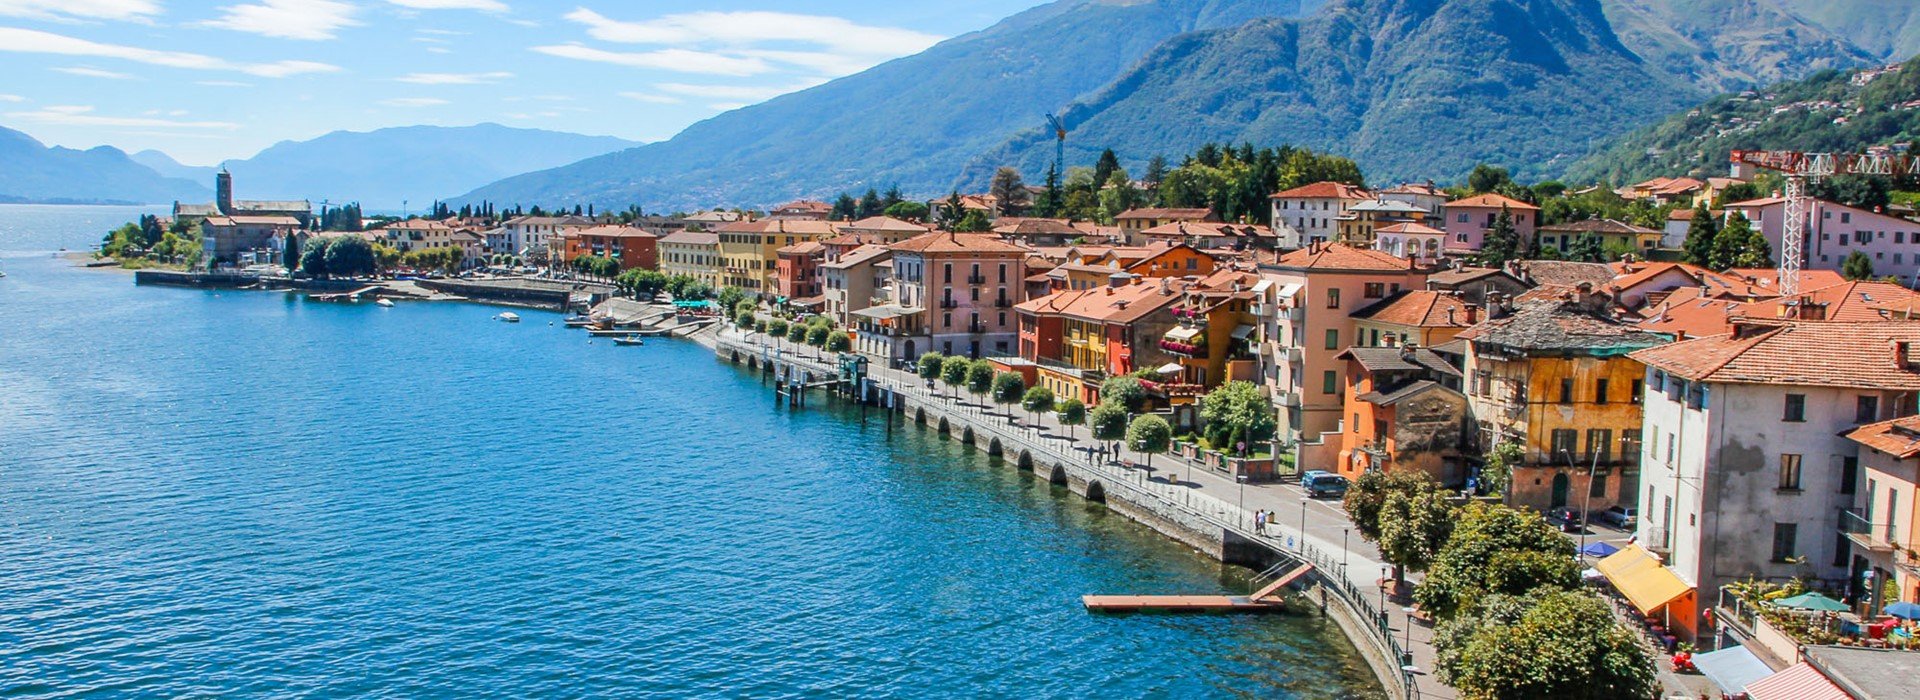 ></center></p><p>8 Days Starting and ending in UK</p><p>Visiting: Bellagio, Lake Como, Villa del Balbianello, Milan, Tirano, Lake Lugano, Bergamo</p><p><center><a href=